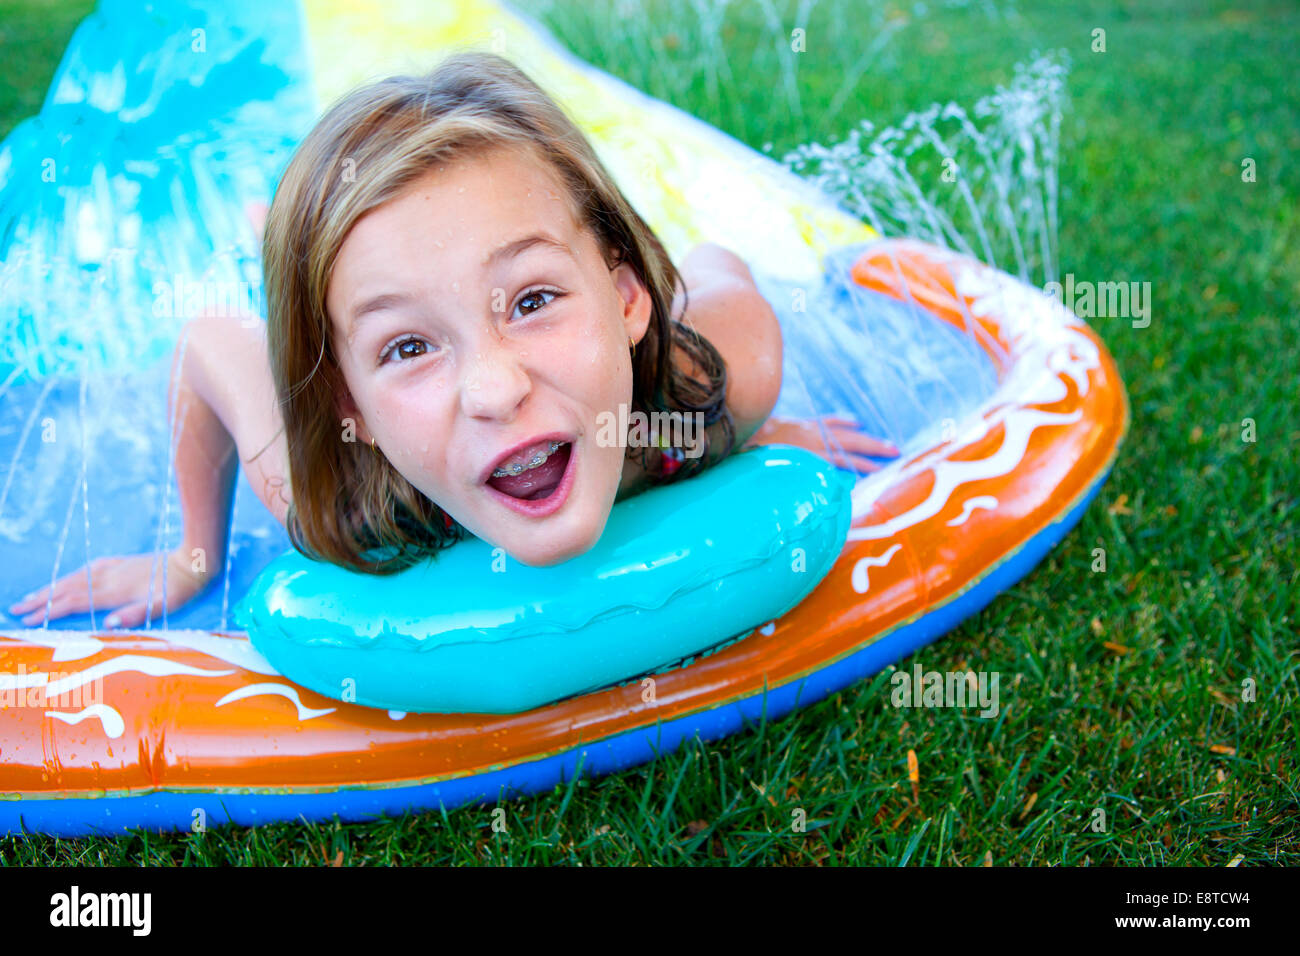 Caucasian ragazza sorridente sulla slitta di acqua Foto Stock